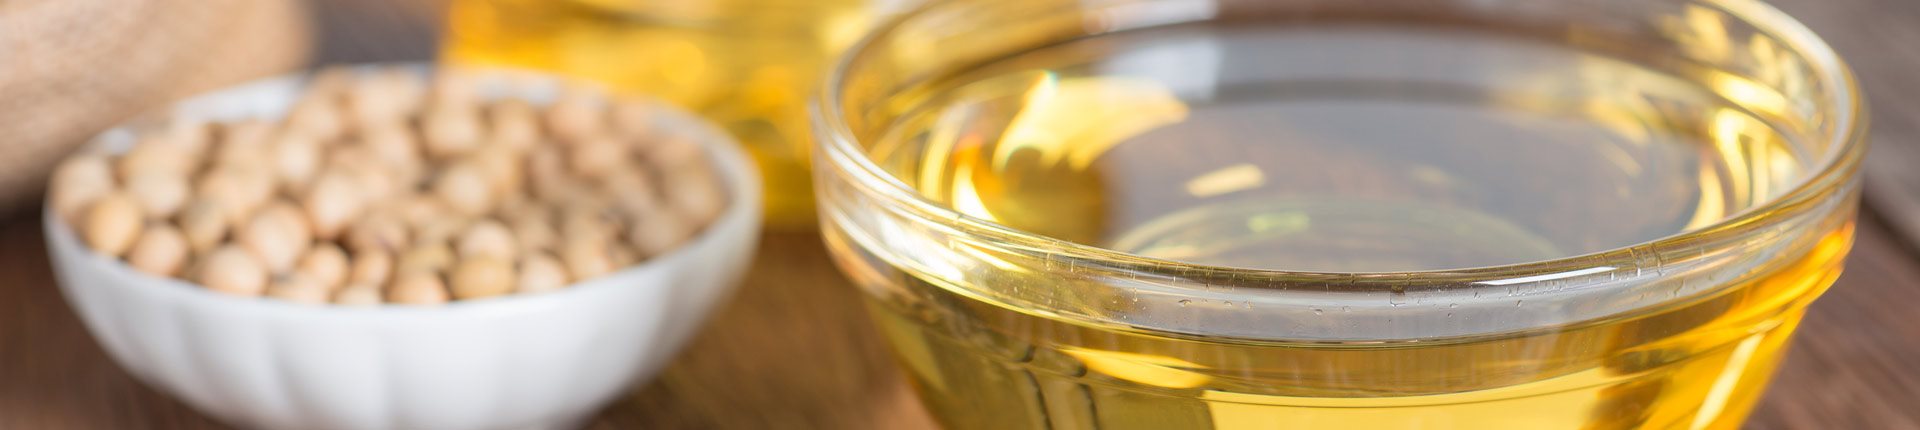 Czy olej sojowy jest szkodliwy dla wątroby?